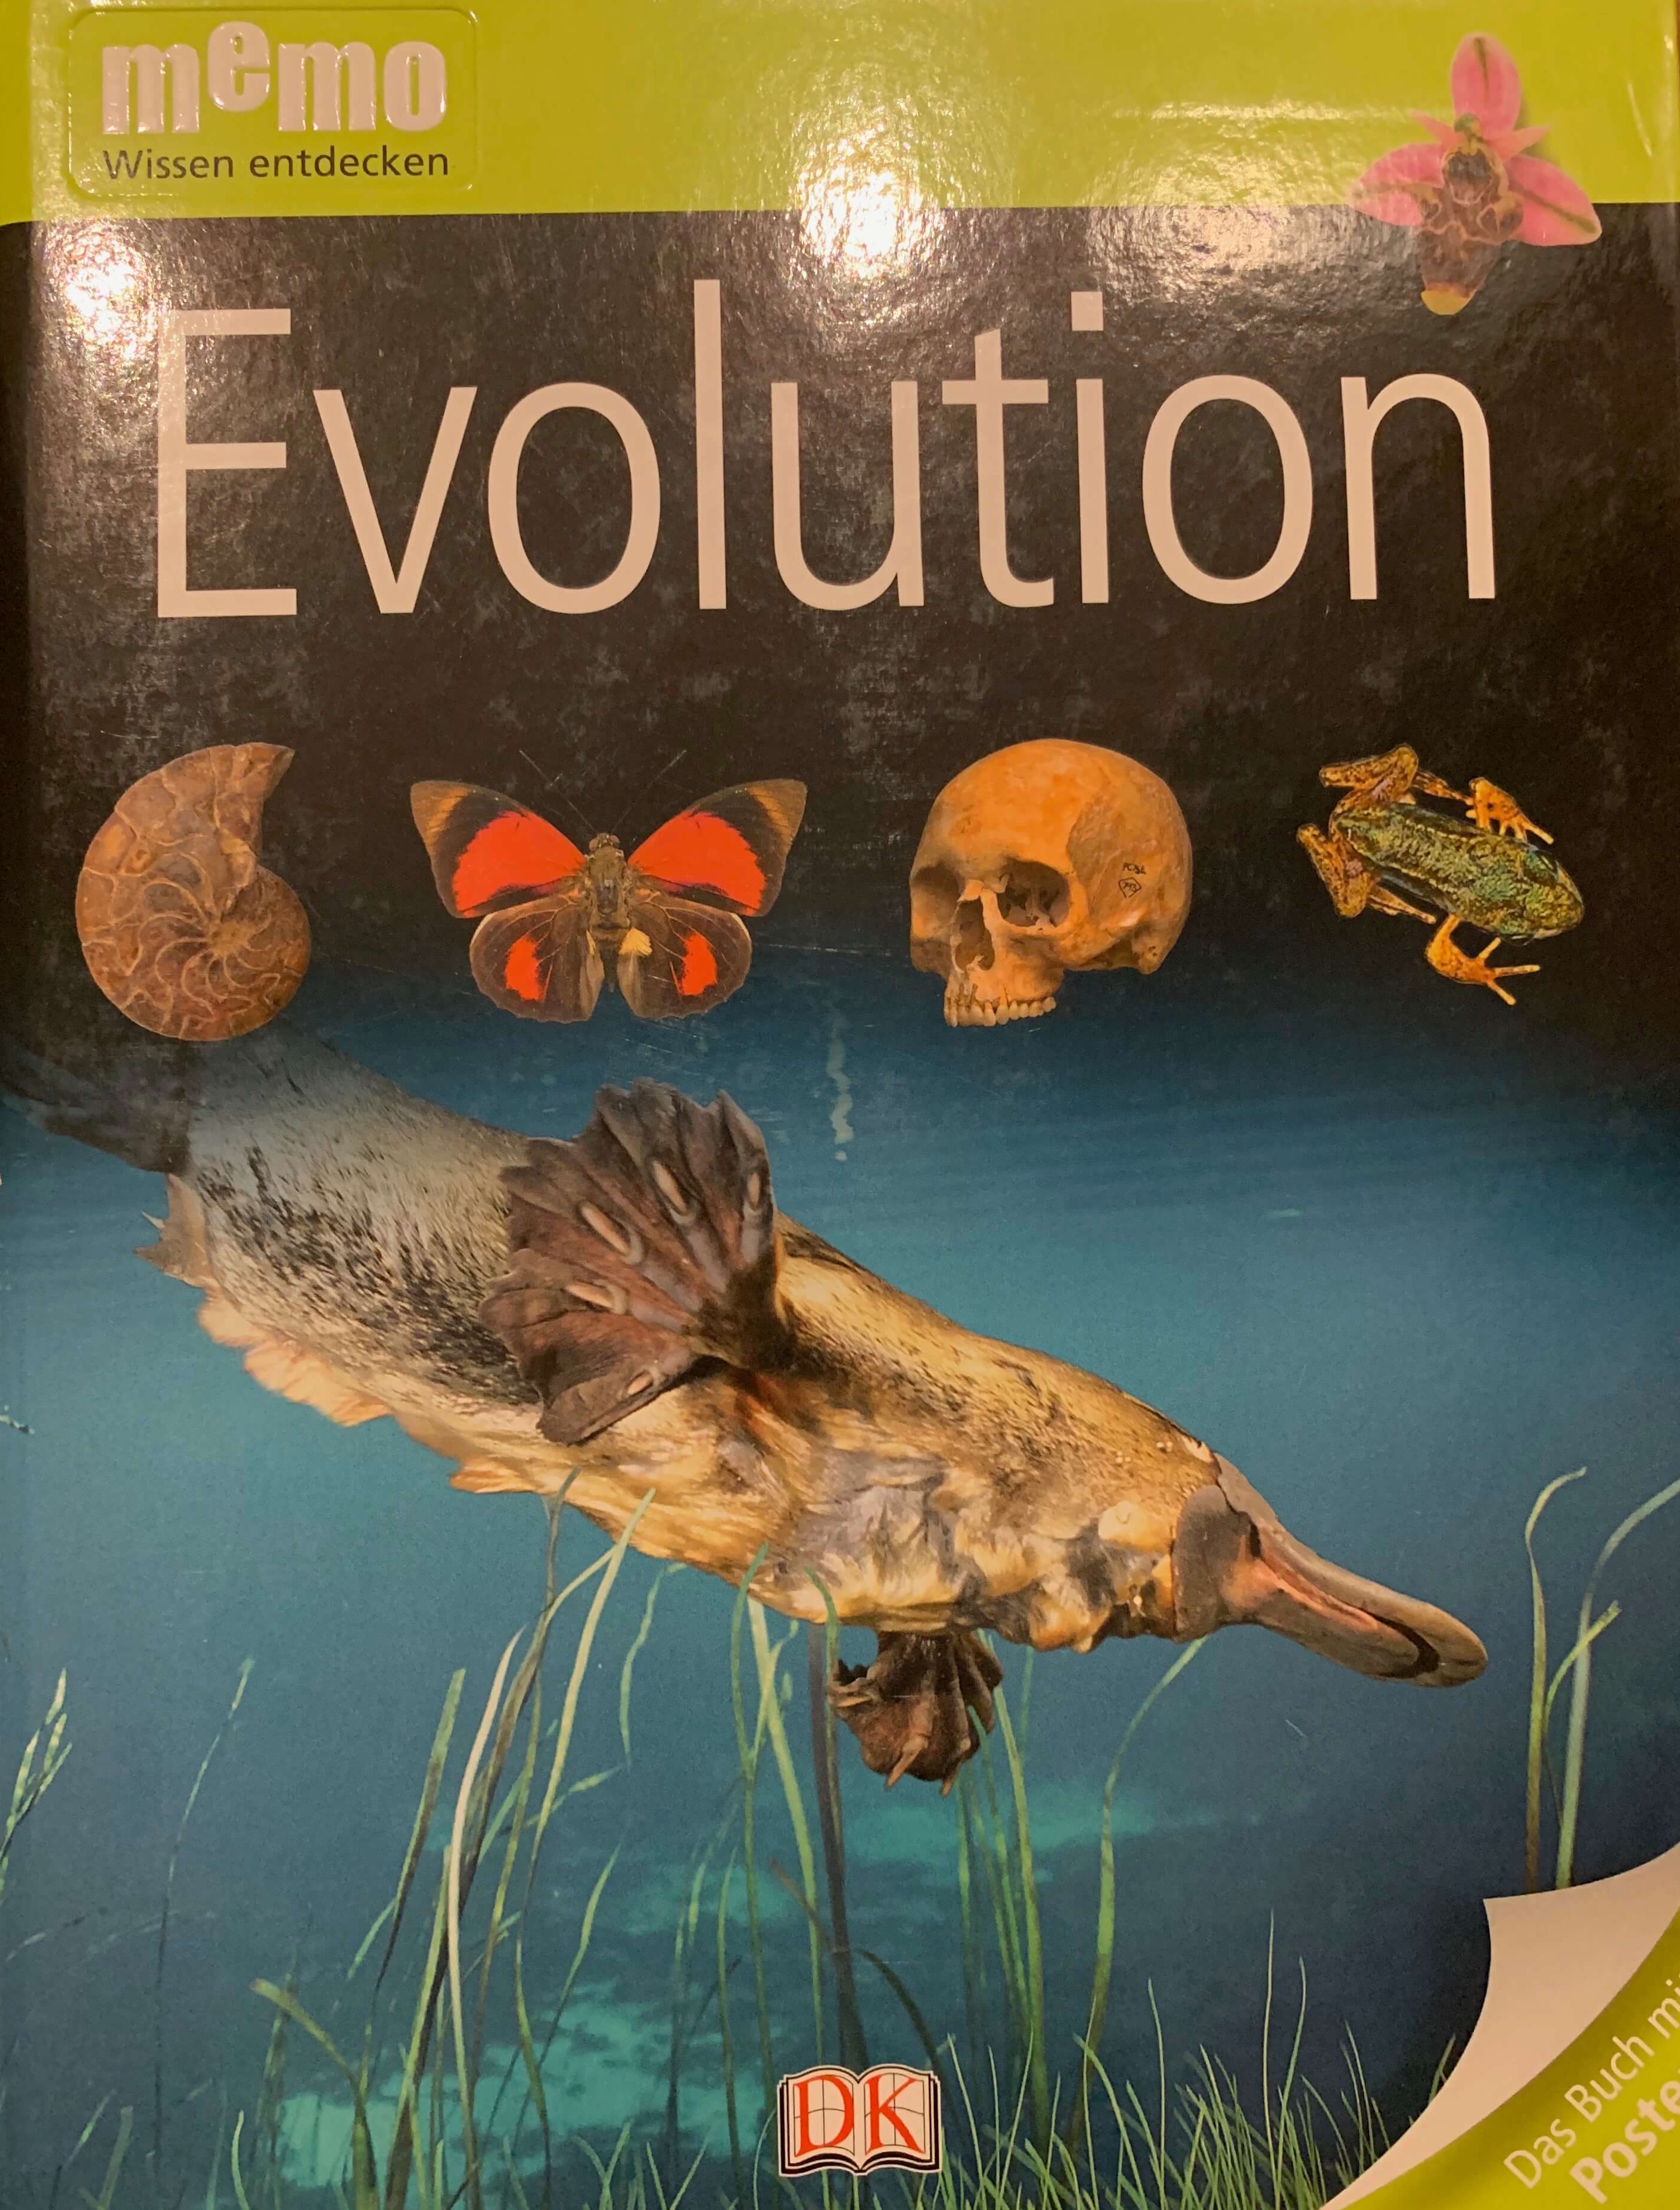 memo Wissen entdecken - Evolution